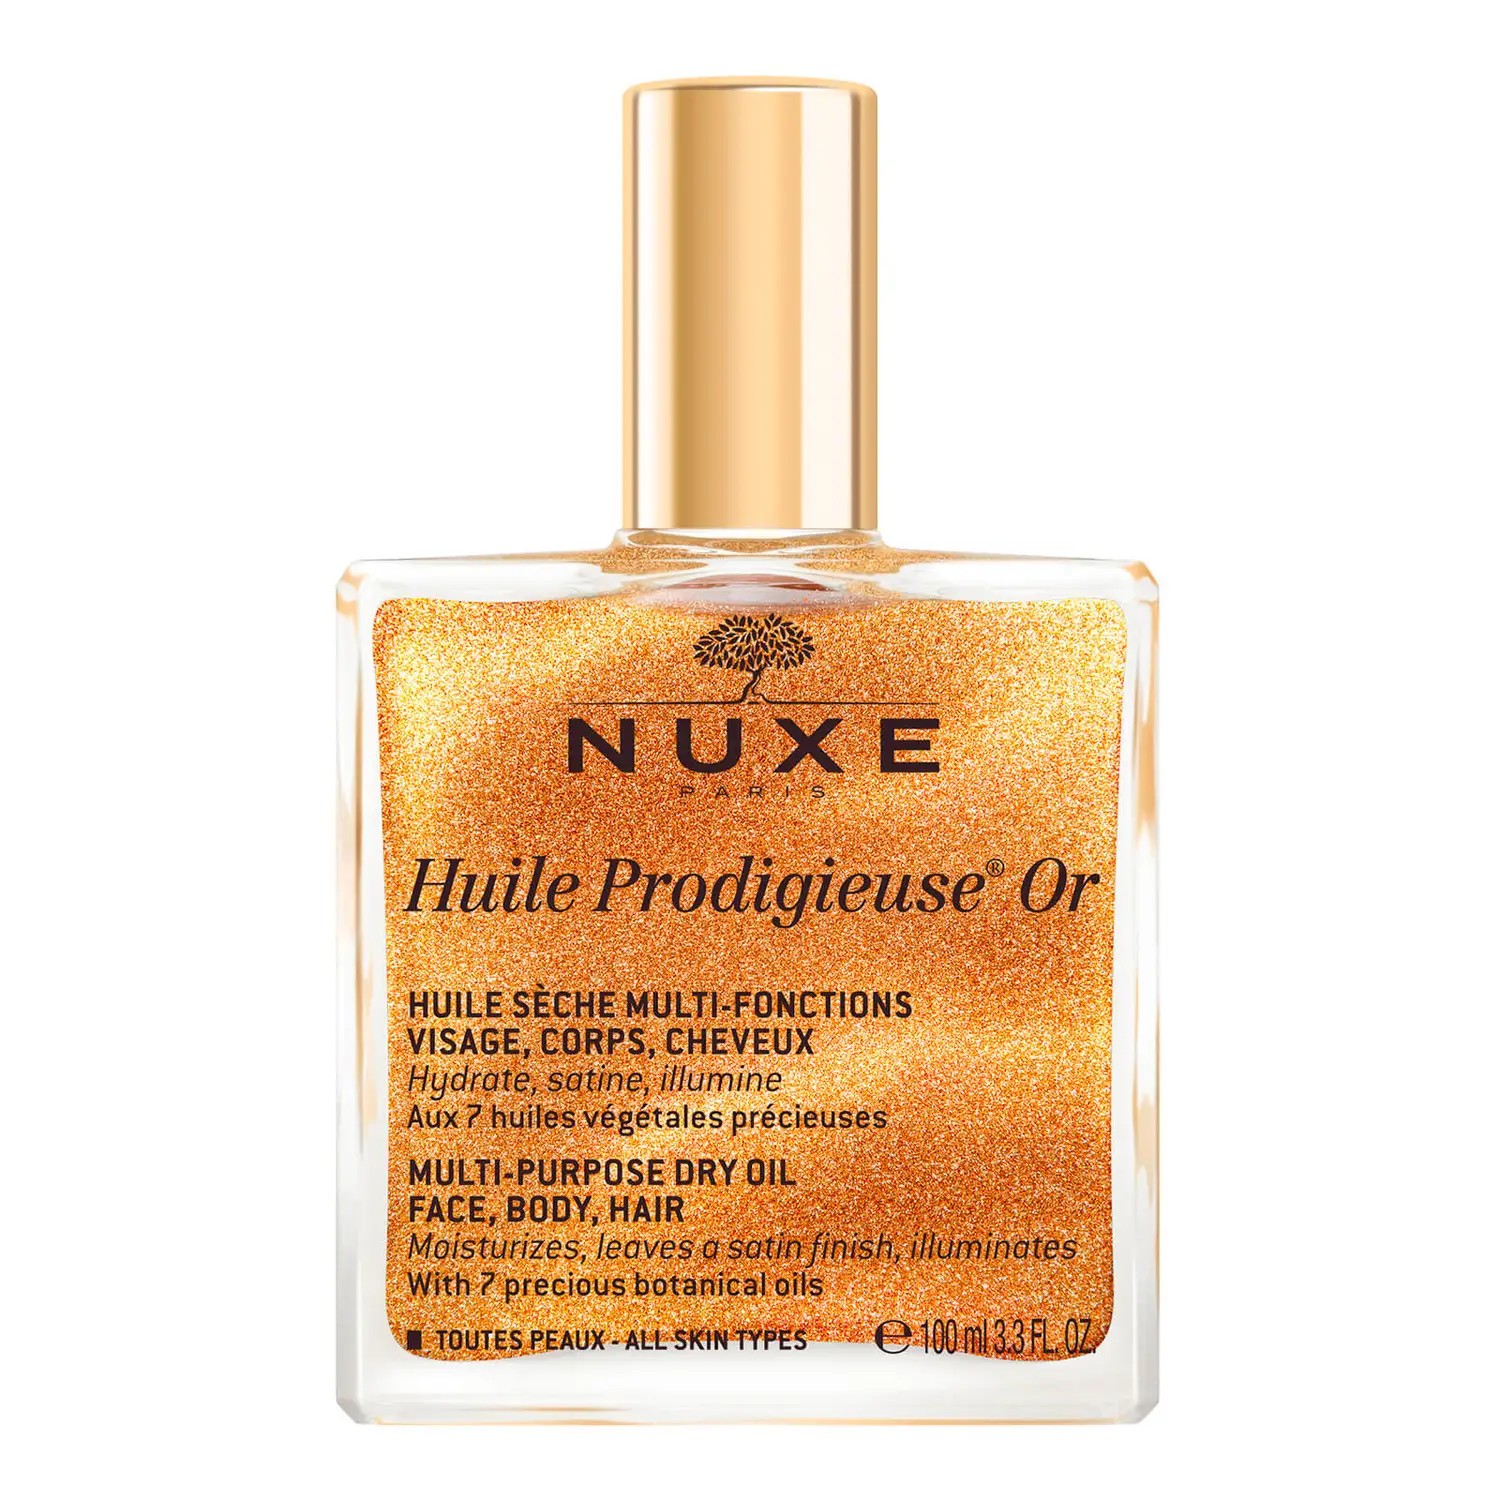 Nuxe Huile Prodigieuse Or Altın Parıltılı Kuru Yağ 100 ml